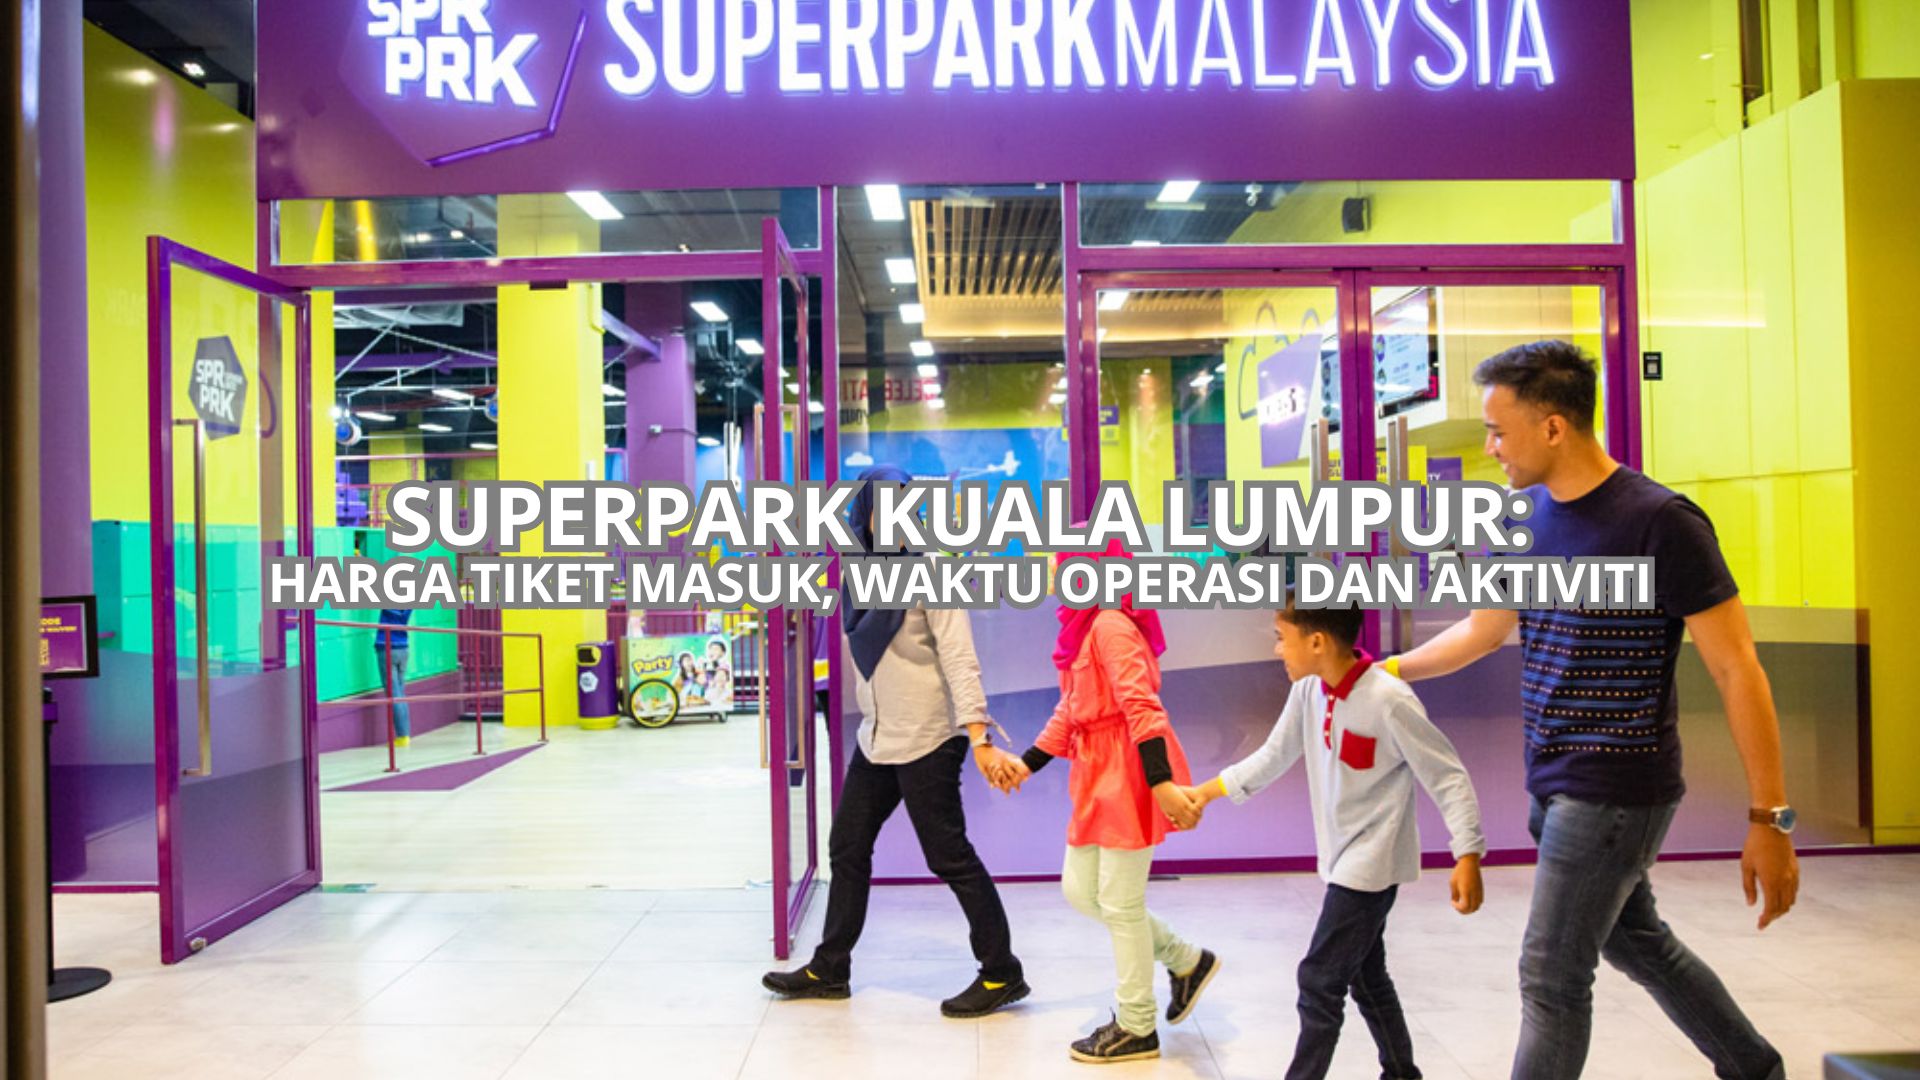 SuperPark Kuala Lumpur Cover